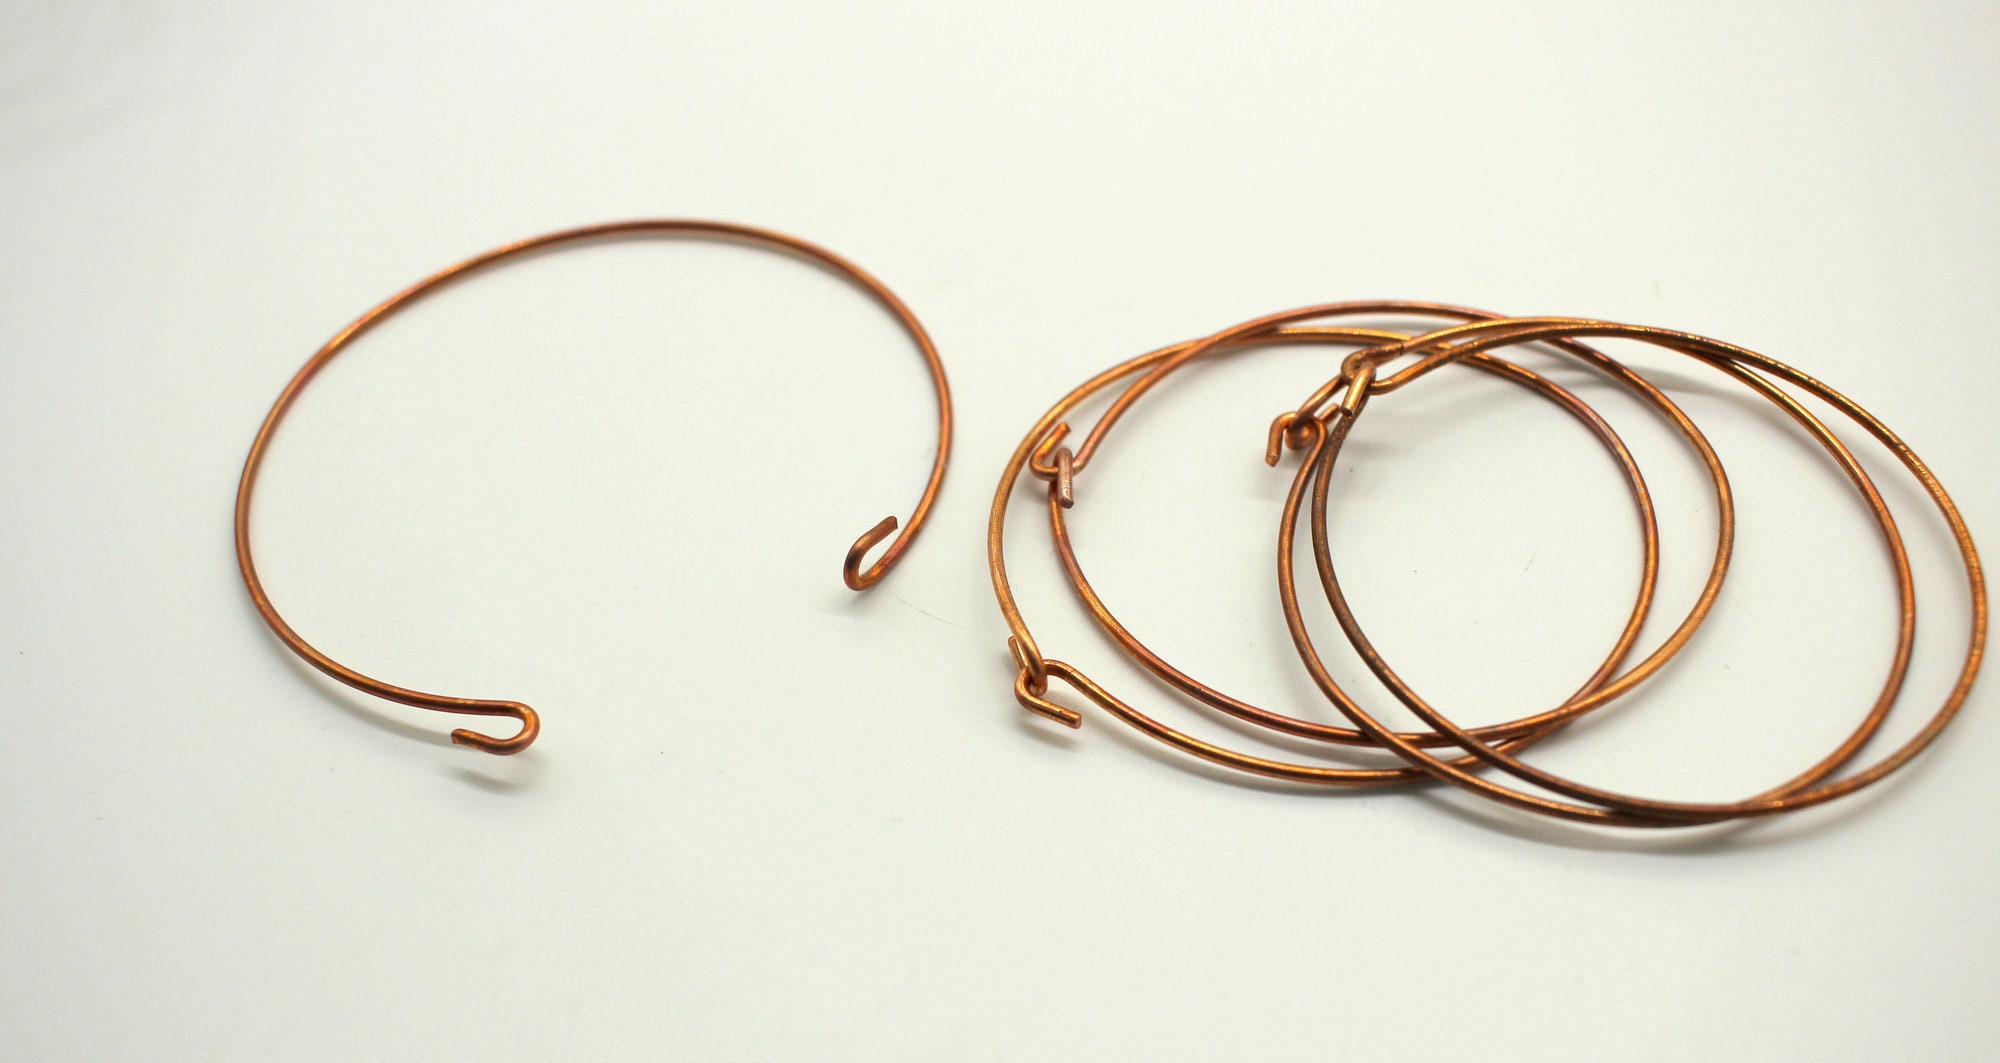 Woven Copper Wire Bracelet #4 Jewelry by Darlene Ryer - Pixels